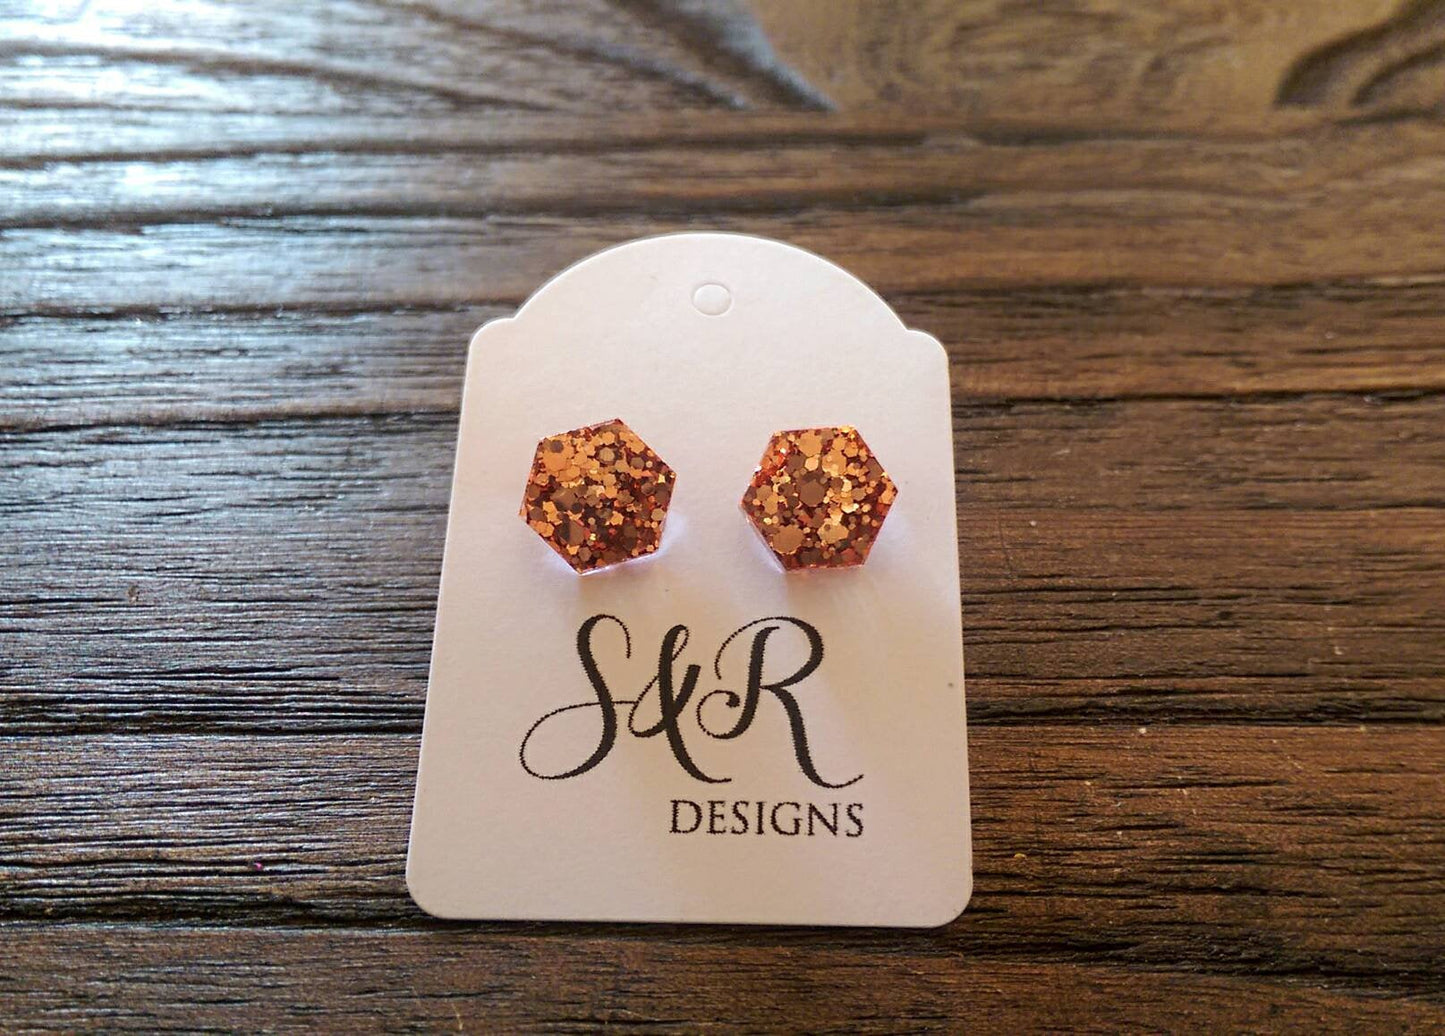 Hexagon Resin Stud Earrings, Rose Gold Copper Earrings. Stainless Steel Stud Earrings. 10mm or 6mm